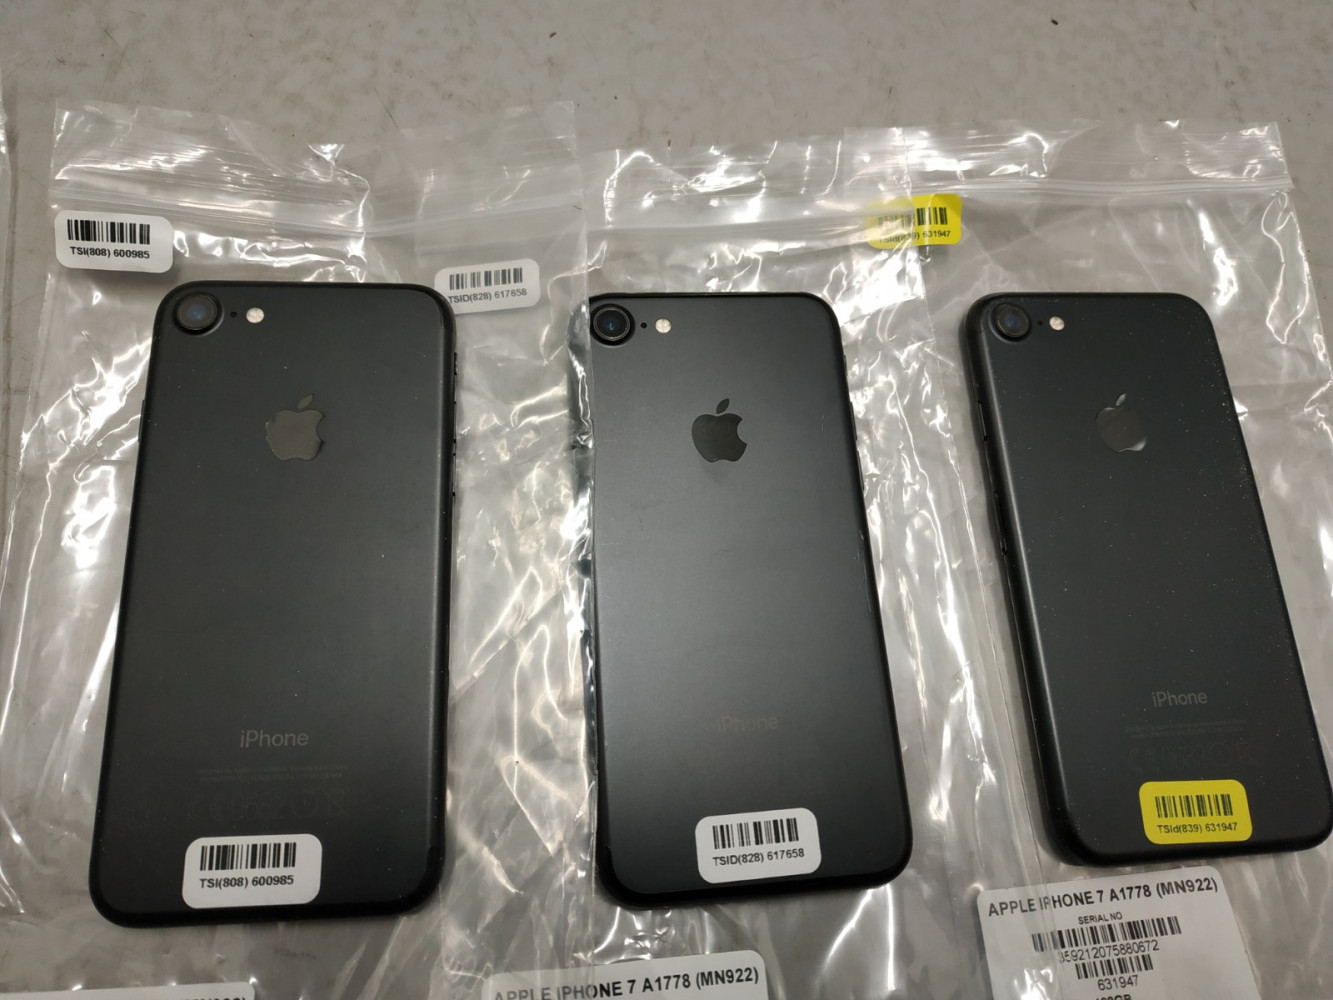 iPhone 7 Plus 128 GB negro mate